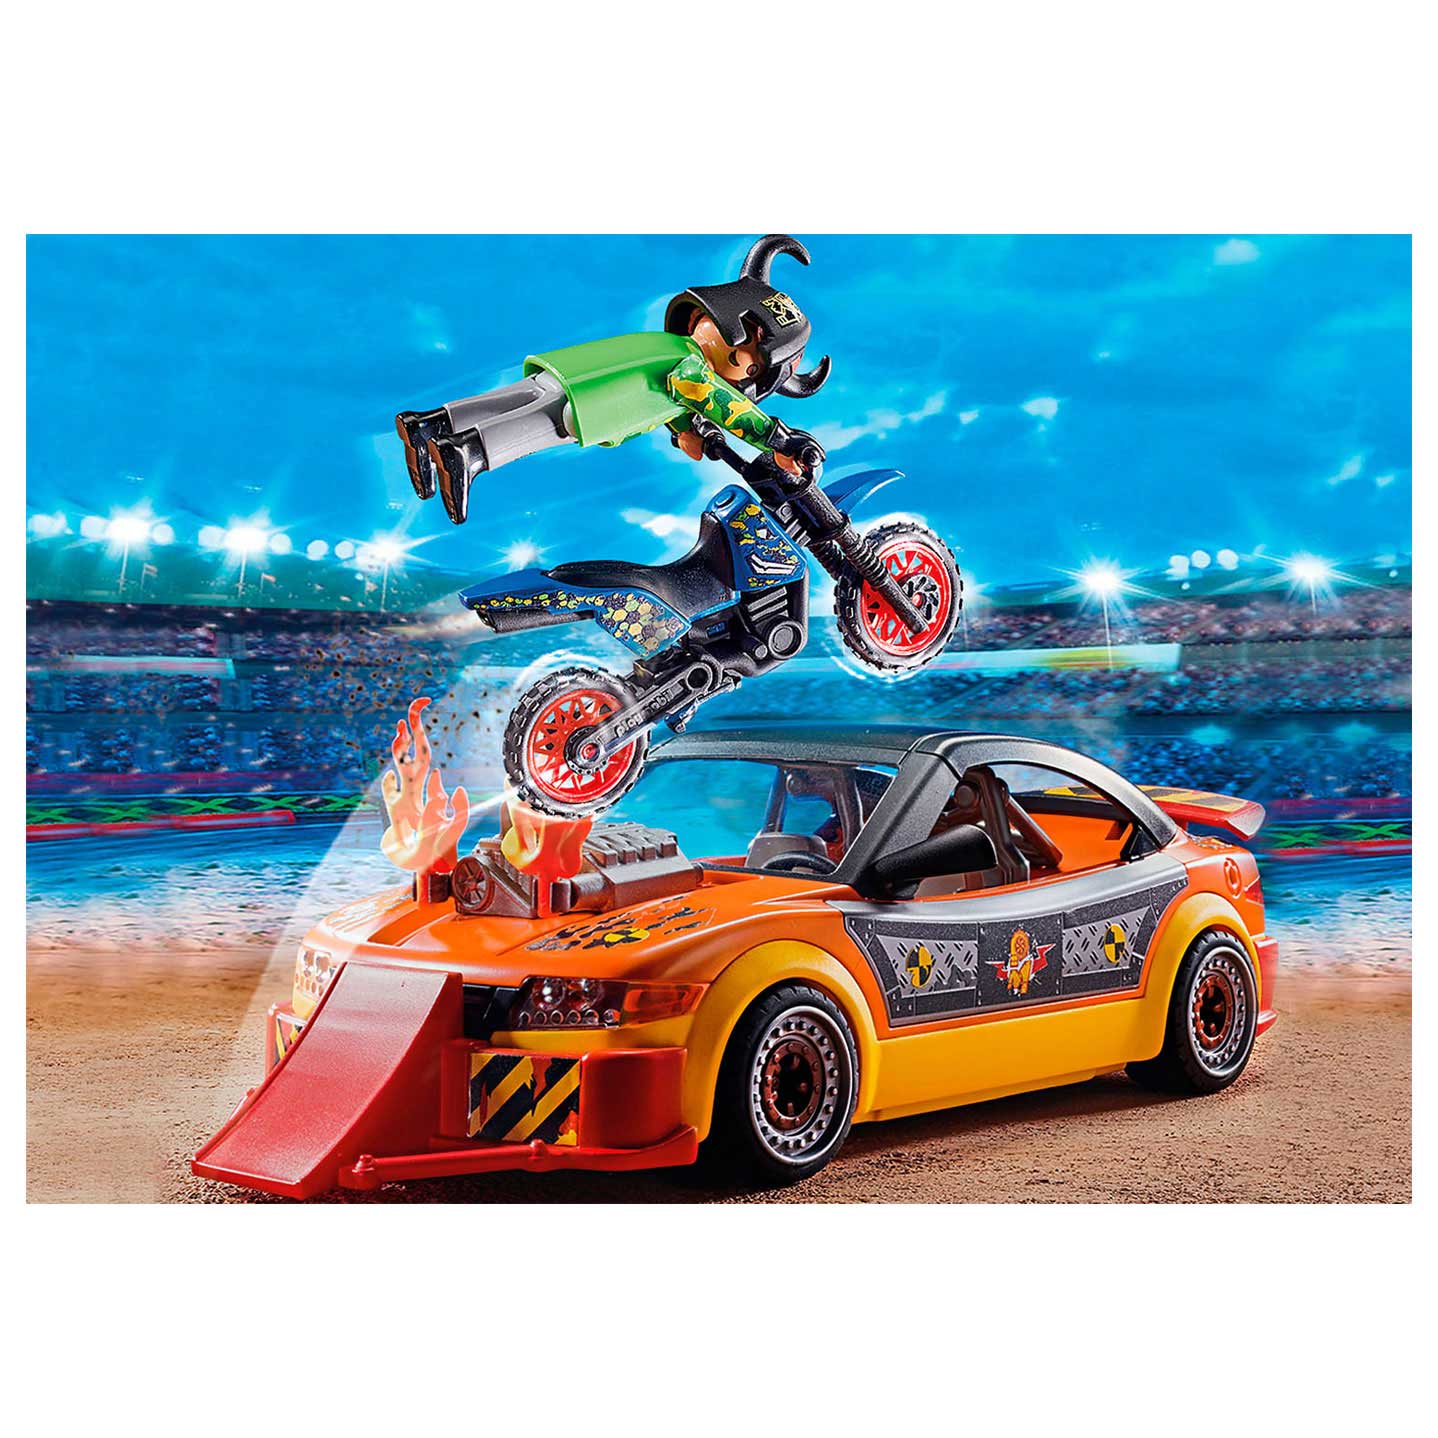 Playmobil Stuntshow Crashcar